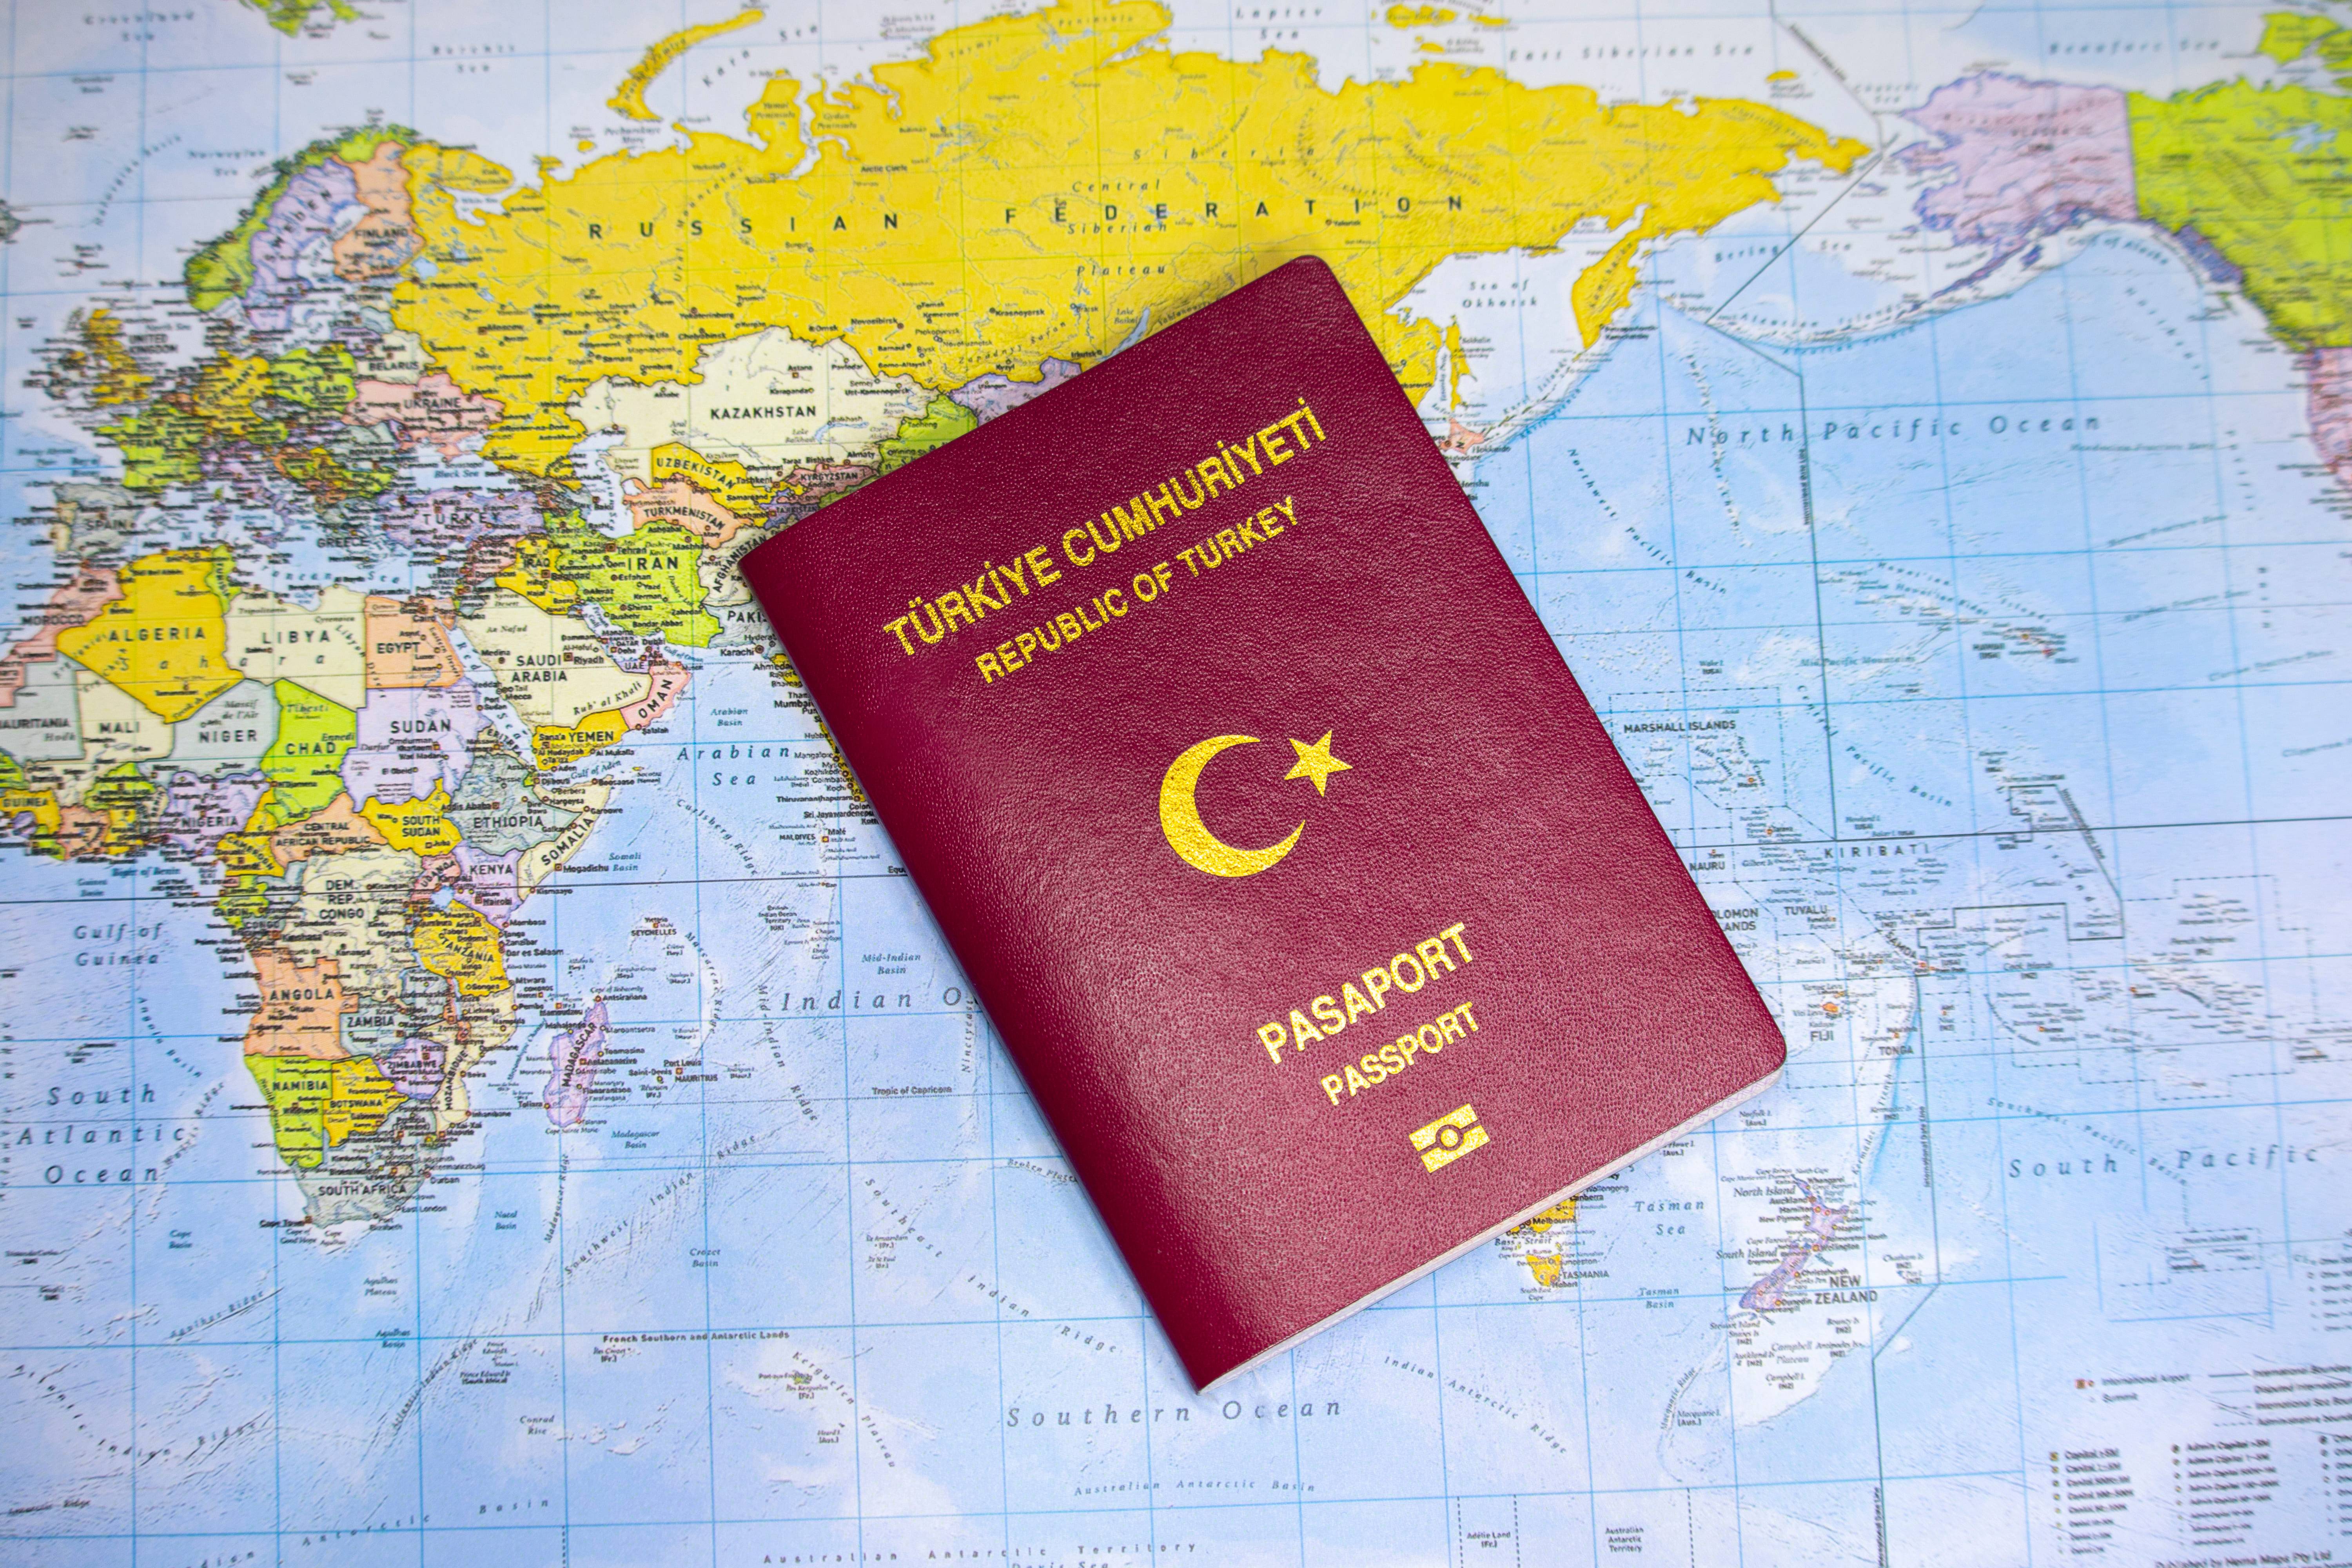 Гражданство турции для россиян: как получить вид на жительство, паспорт и турецкое гражданство
гражданство турции для россиян: как получить вид на жительство, паспорт и турецкое гражданство